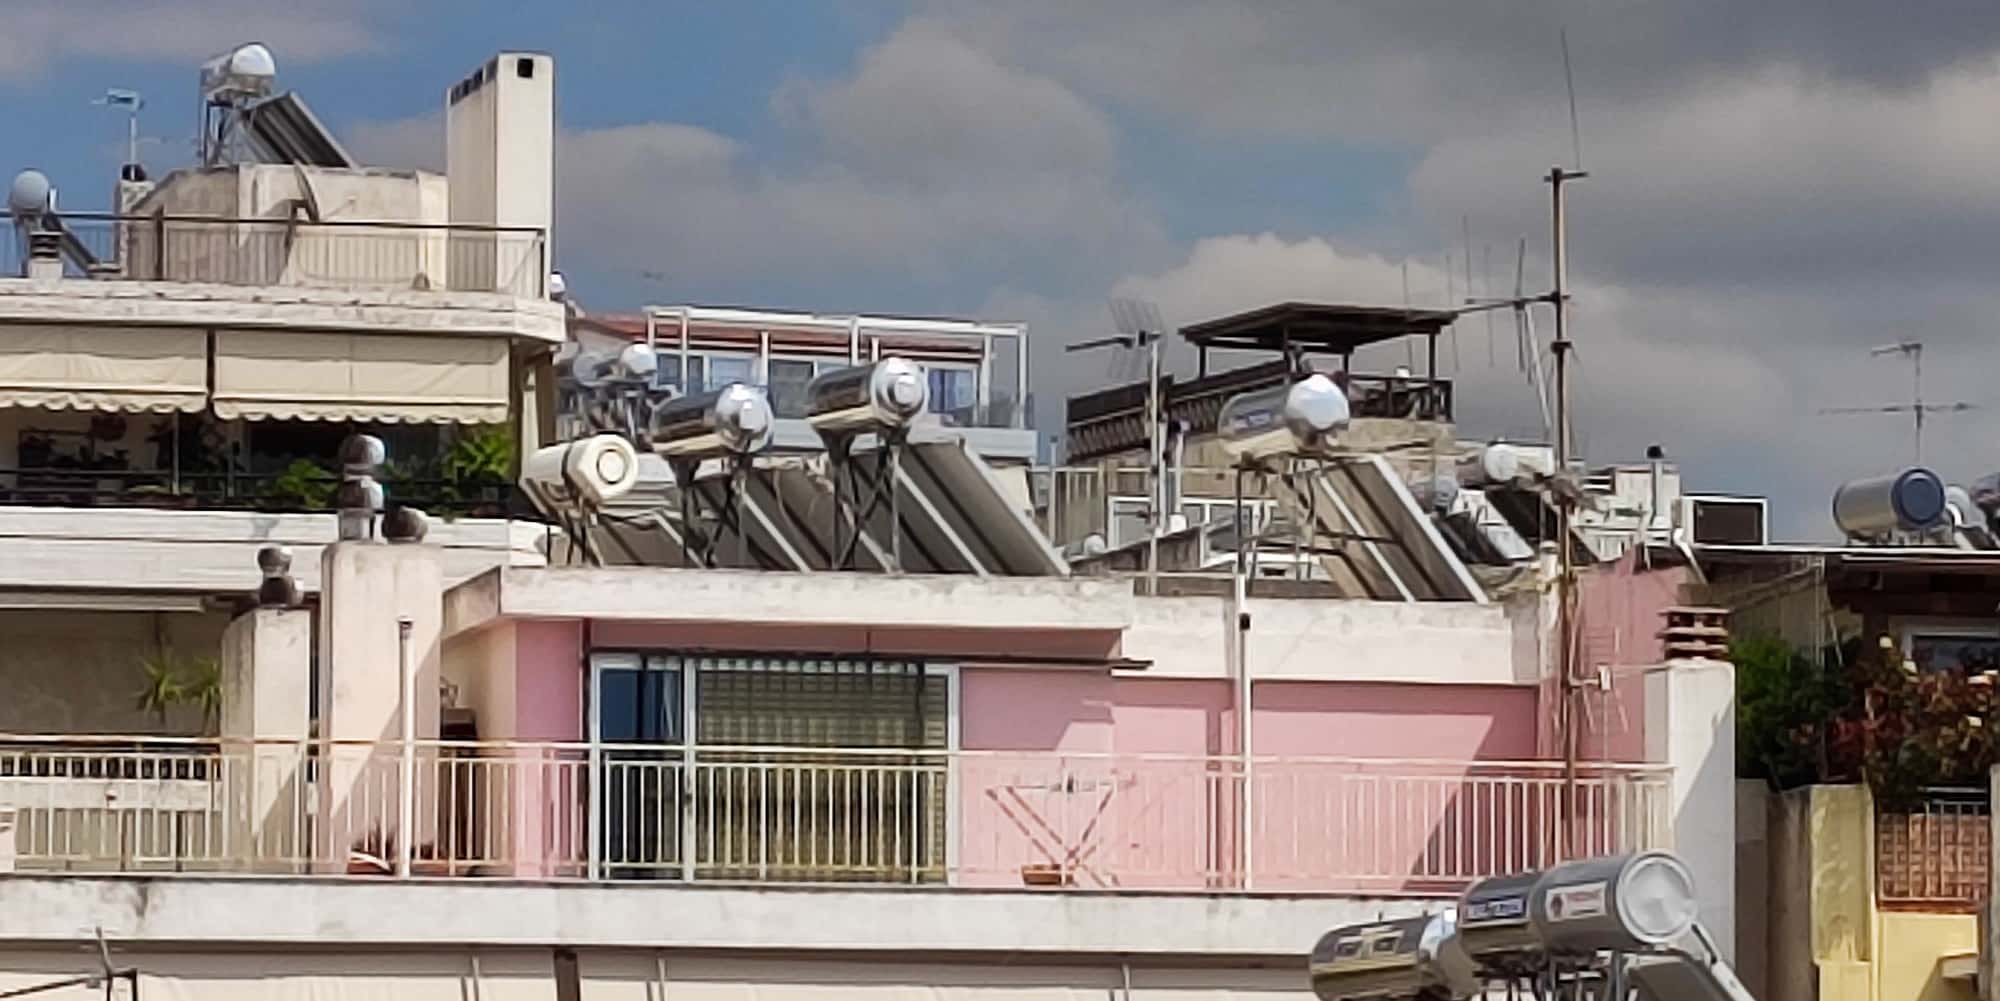 Ηλιακοί θερμοσίφωνες σε ταράτσες πολυκατοικιών στην Αθήνα